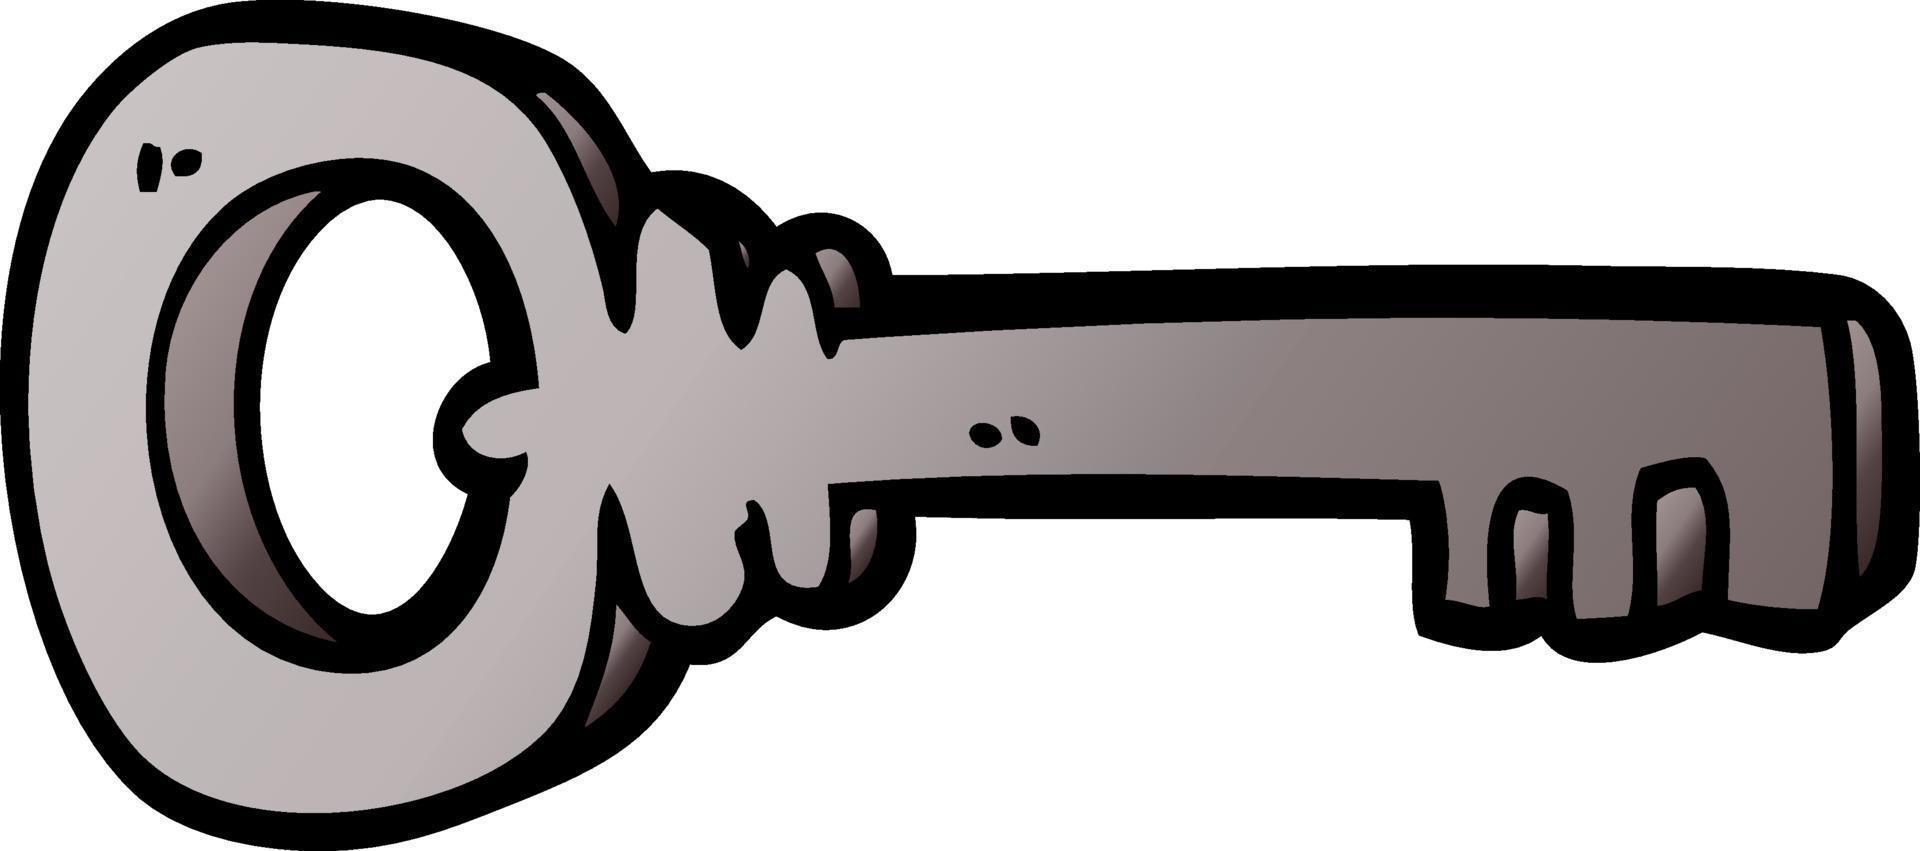 chiave di metallo di doodle del fumetto vettore